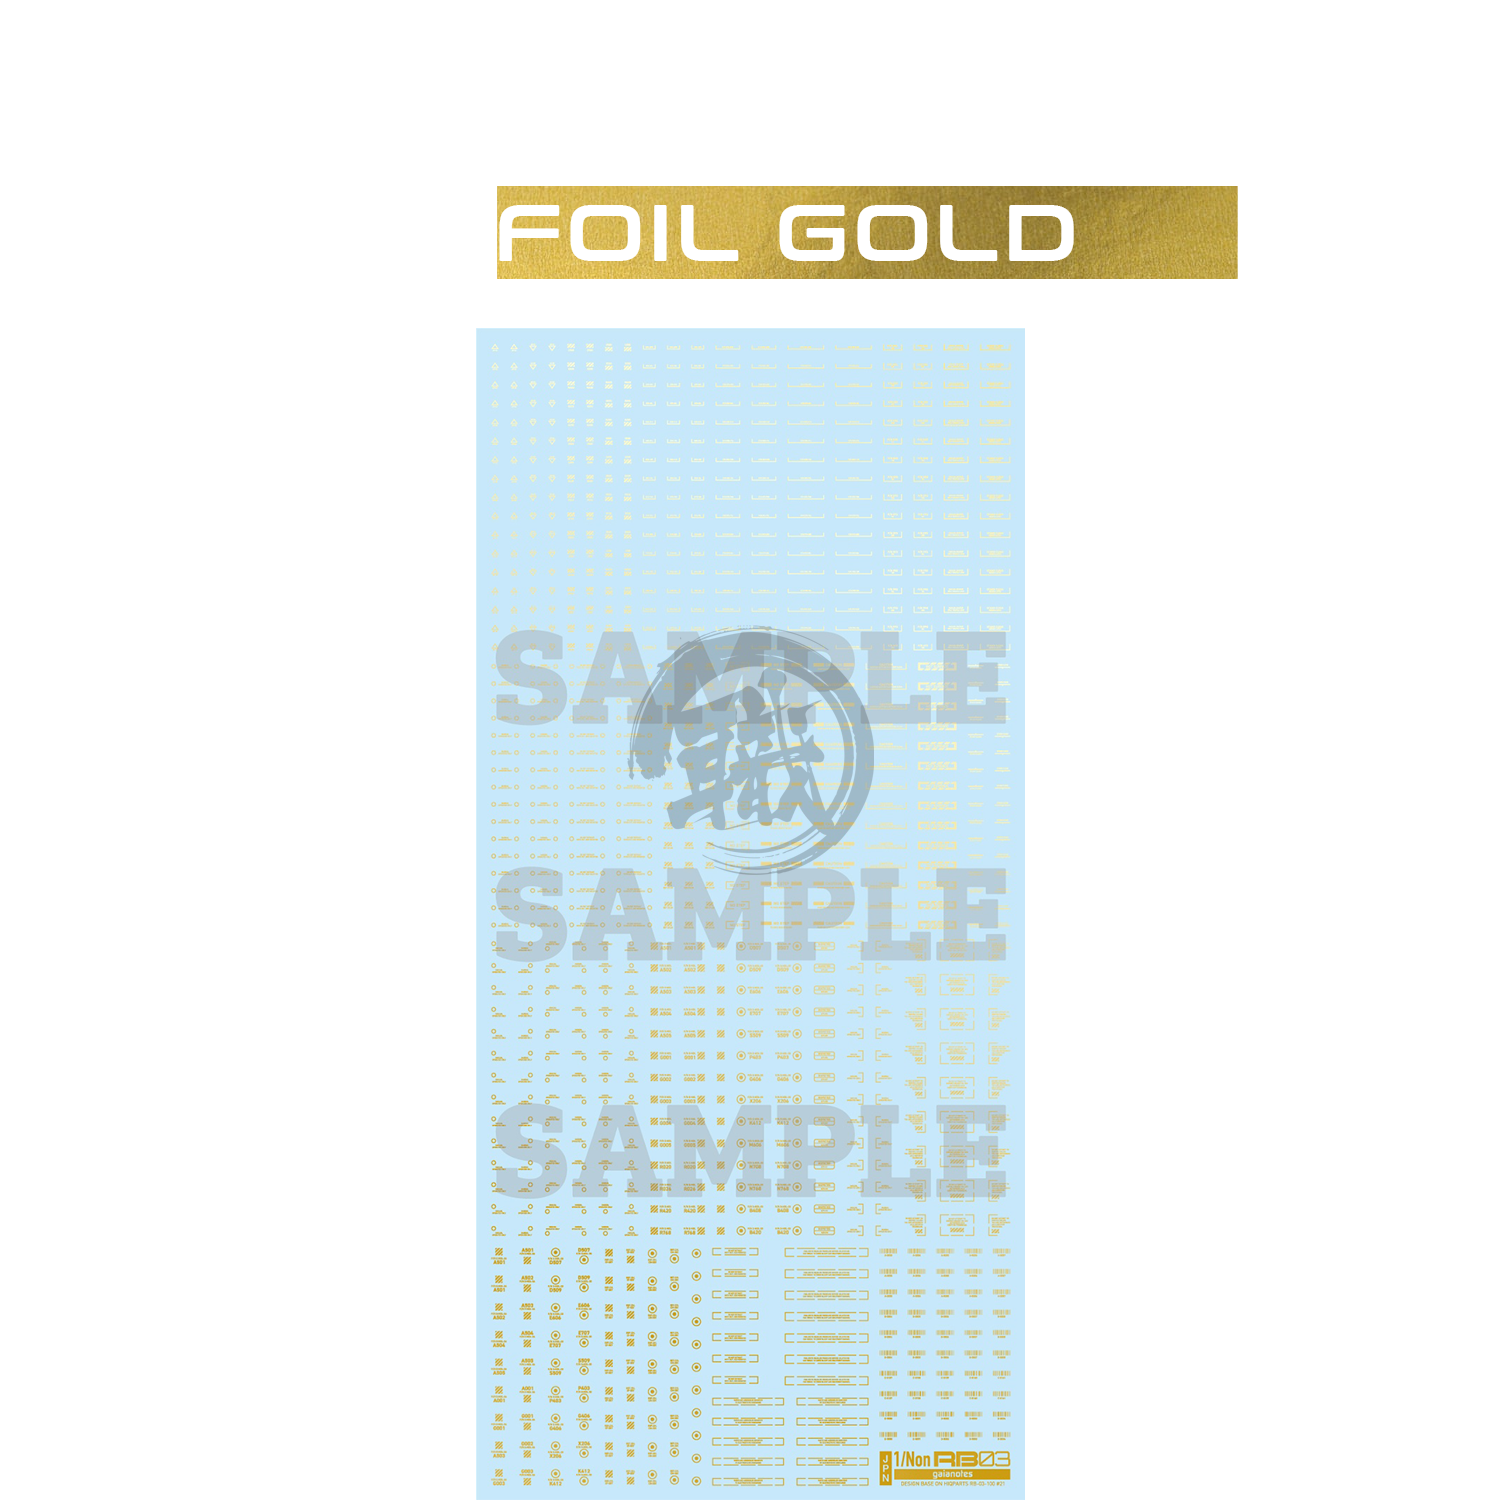 RB03 Caution Decal [Foil Gold] [1/Non Scale] - ShokuninGunpla